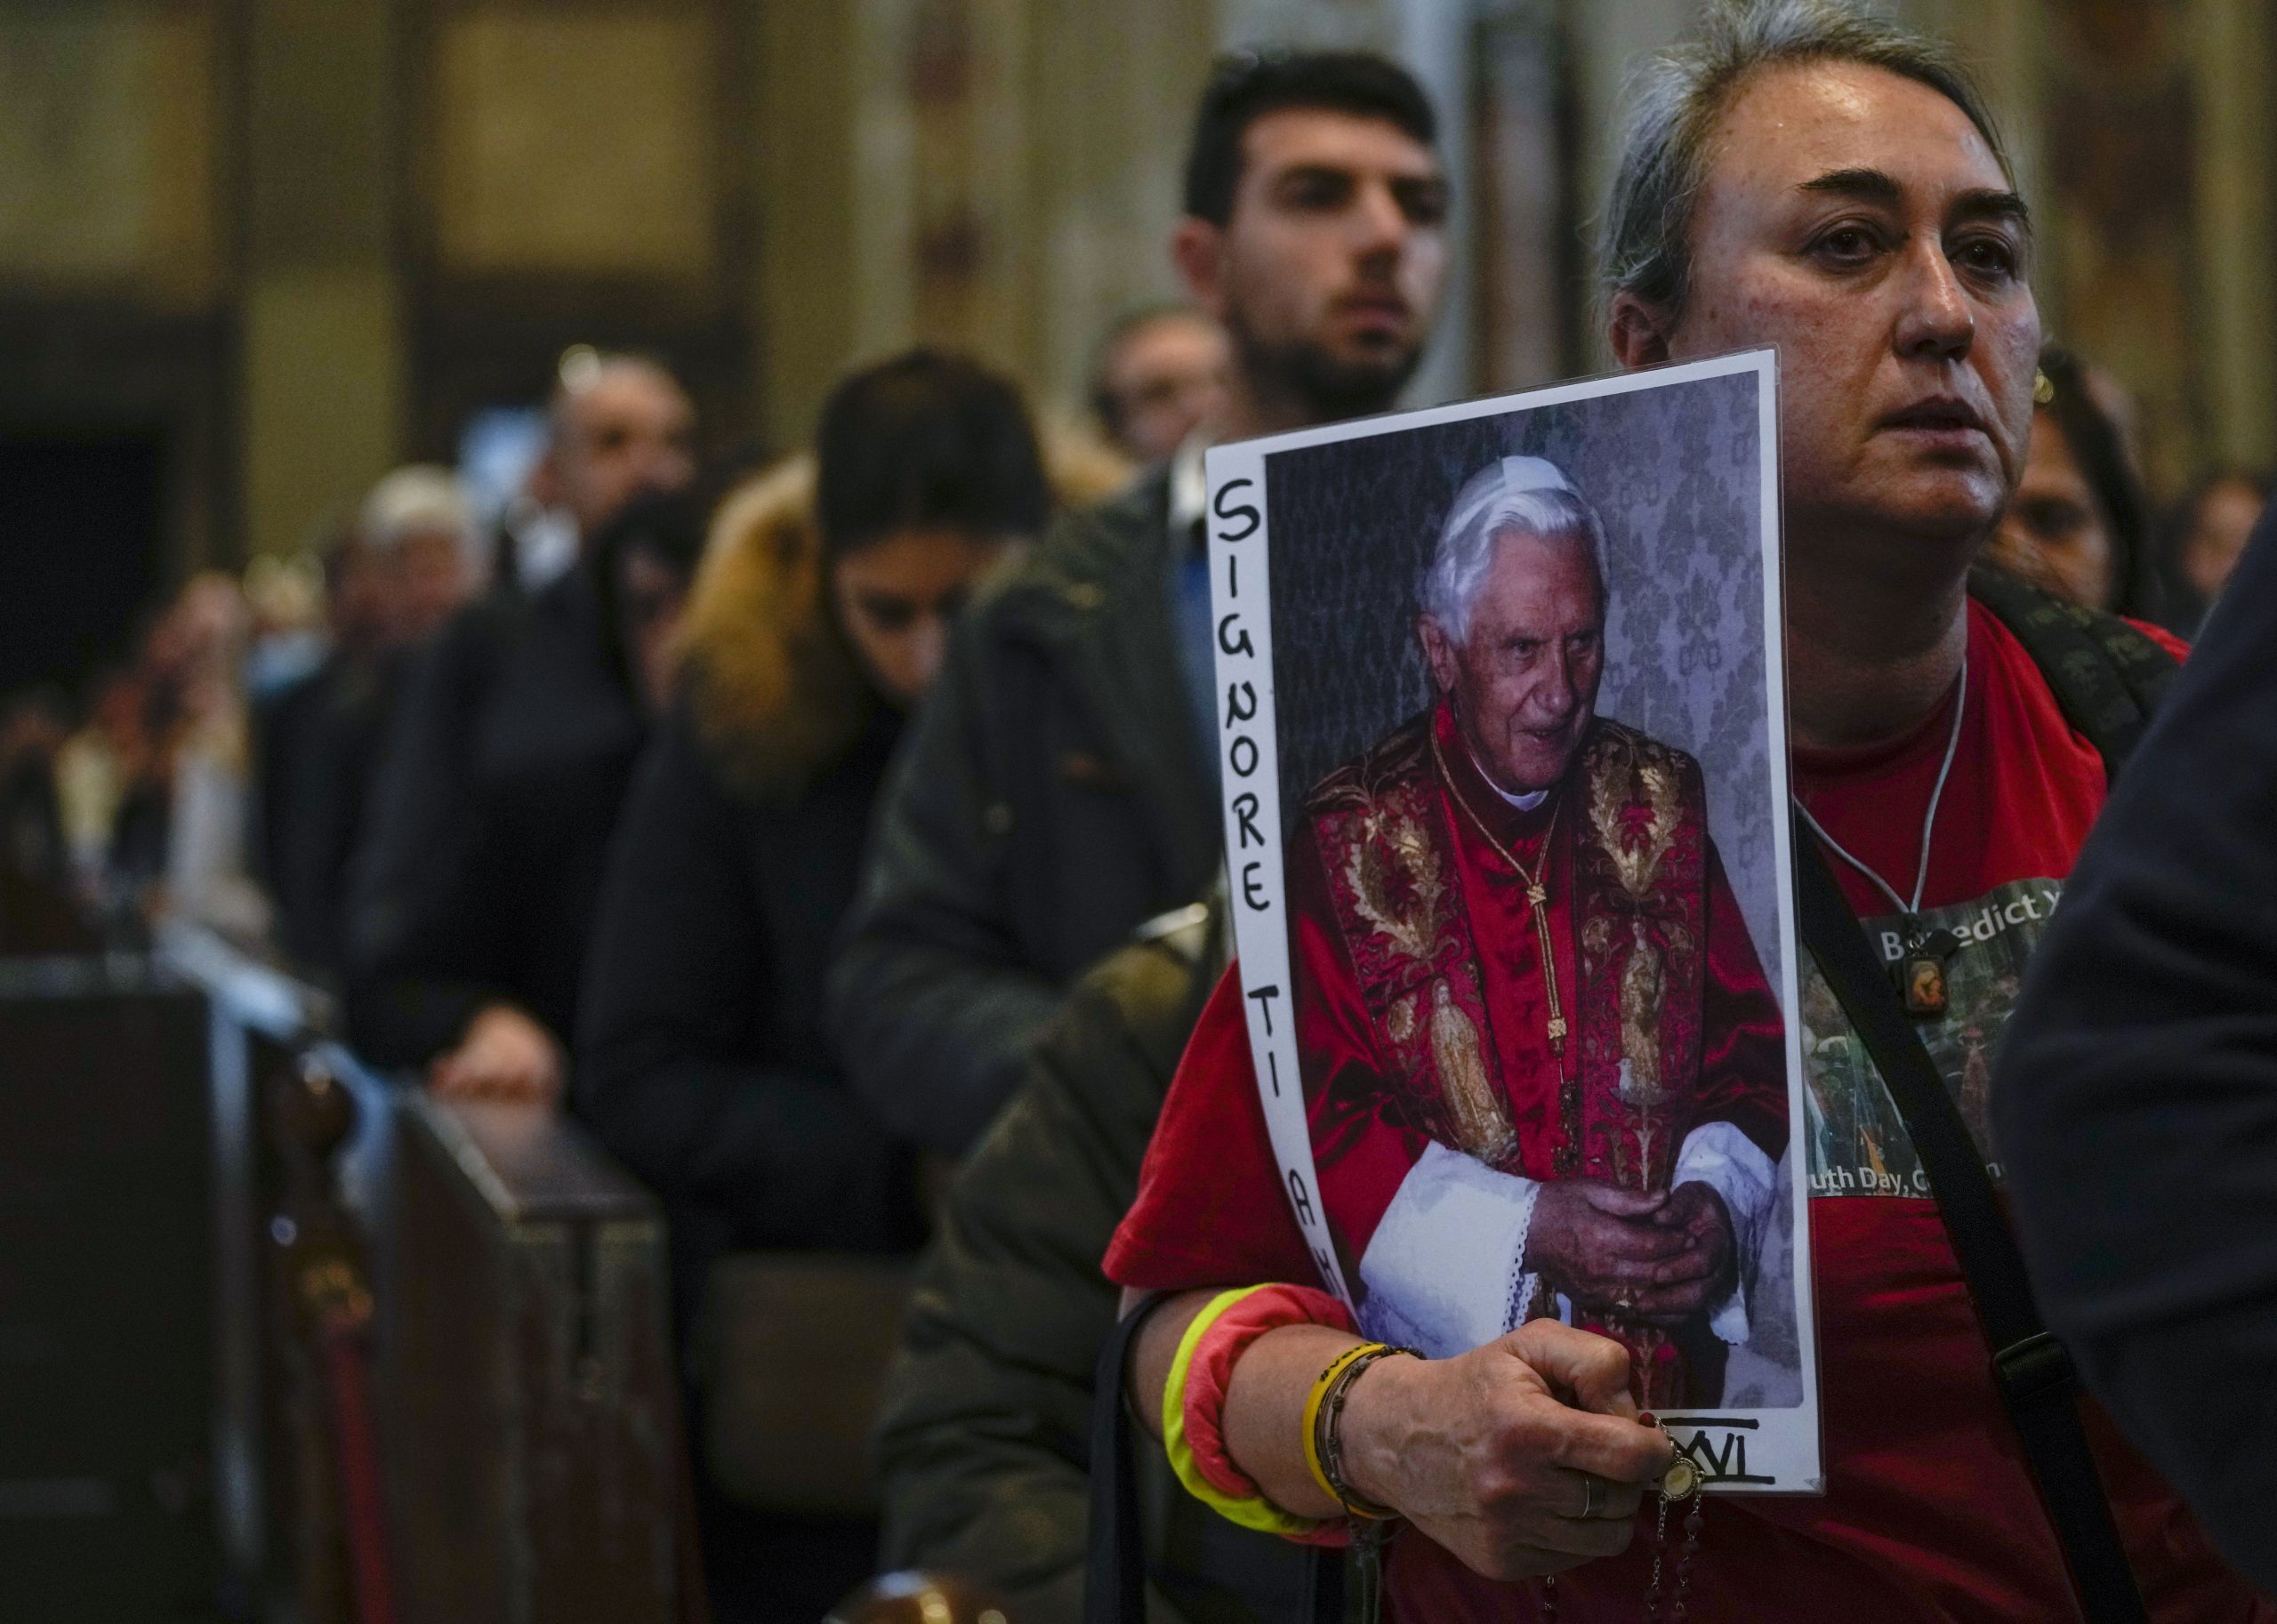 RTVS odvysiela pohrebnú omšu za zosnulého emeritného pápeža Benedikta XVI.